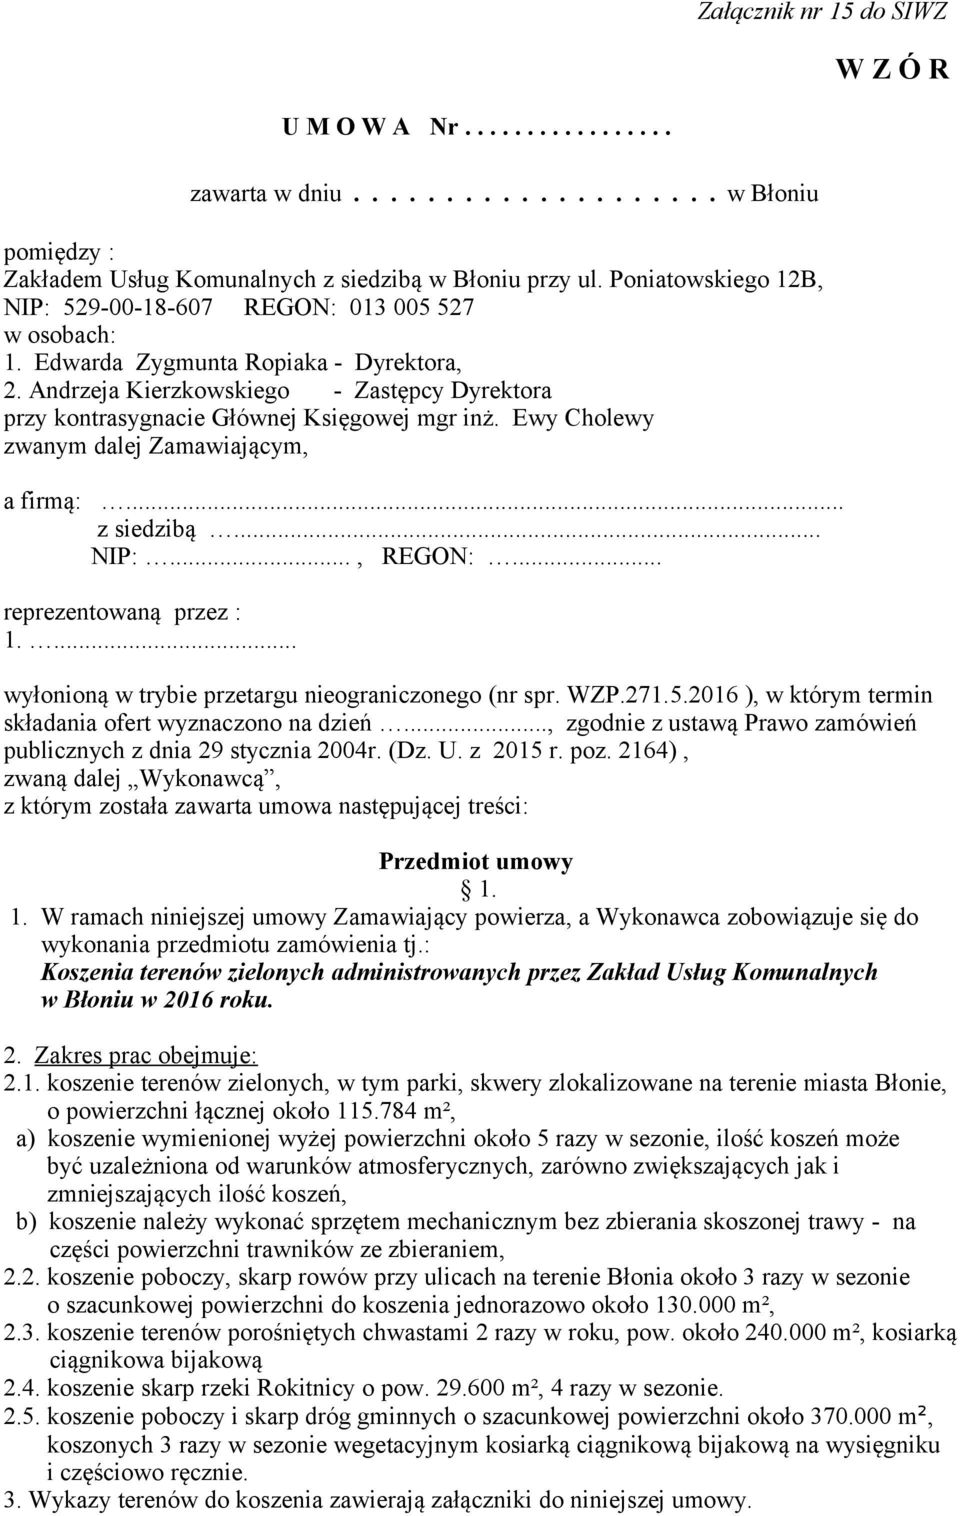 REGON:... NIP:... Koszenie terenów zielonych administrowanych przez Zakład  Usług Komunalnych w Błoniu w 2016 roku - PDF Darmowe pobieranie